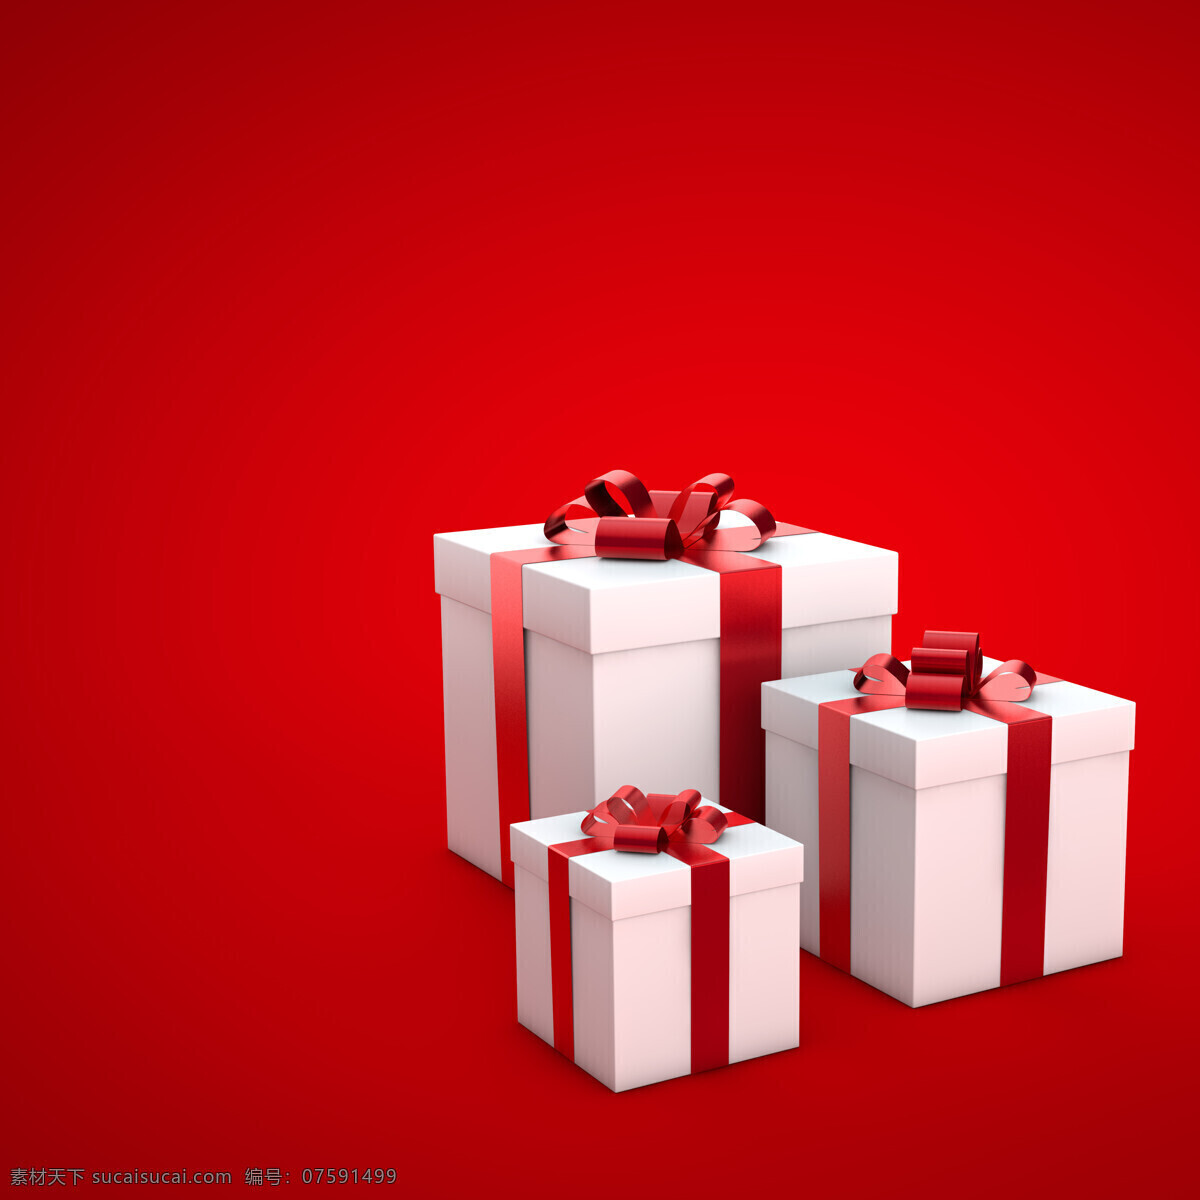 红色 背景 礼物 红色背景 礼盒 花朵 飘带 节日庆典 生活百科